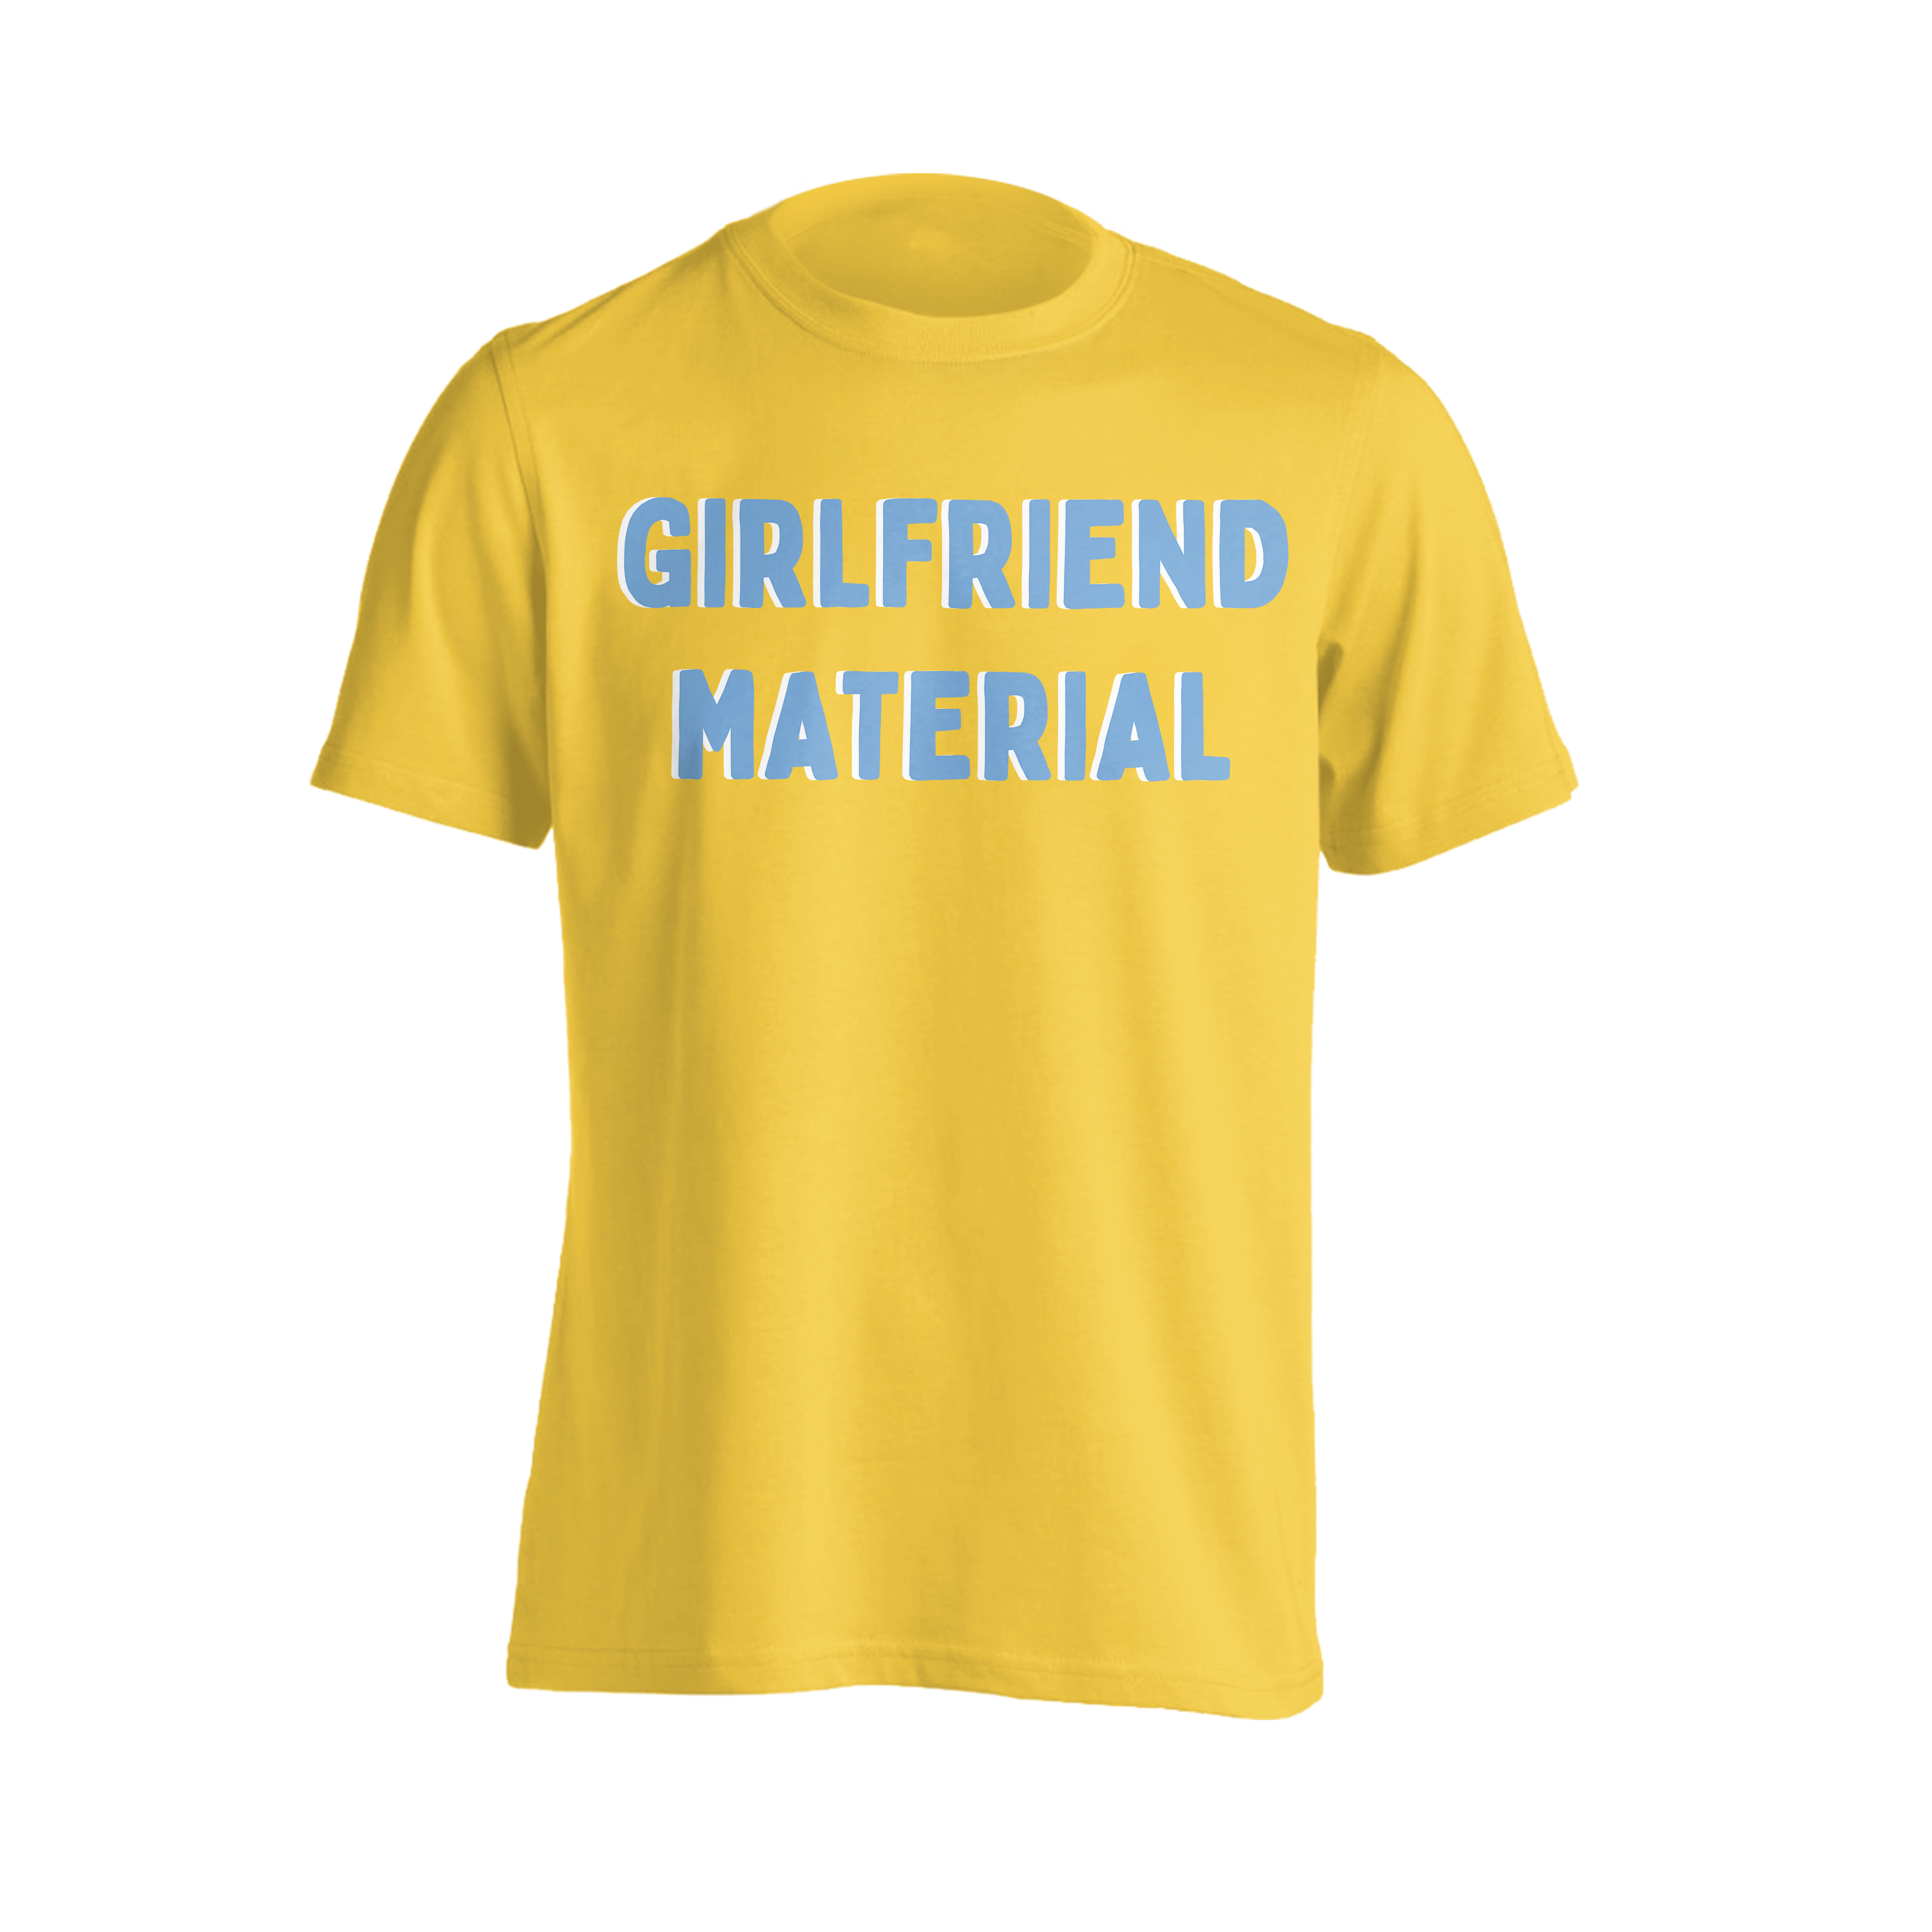 Lauran Hibberd - Girlfriend Material T-Shirt